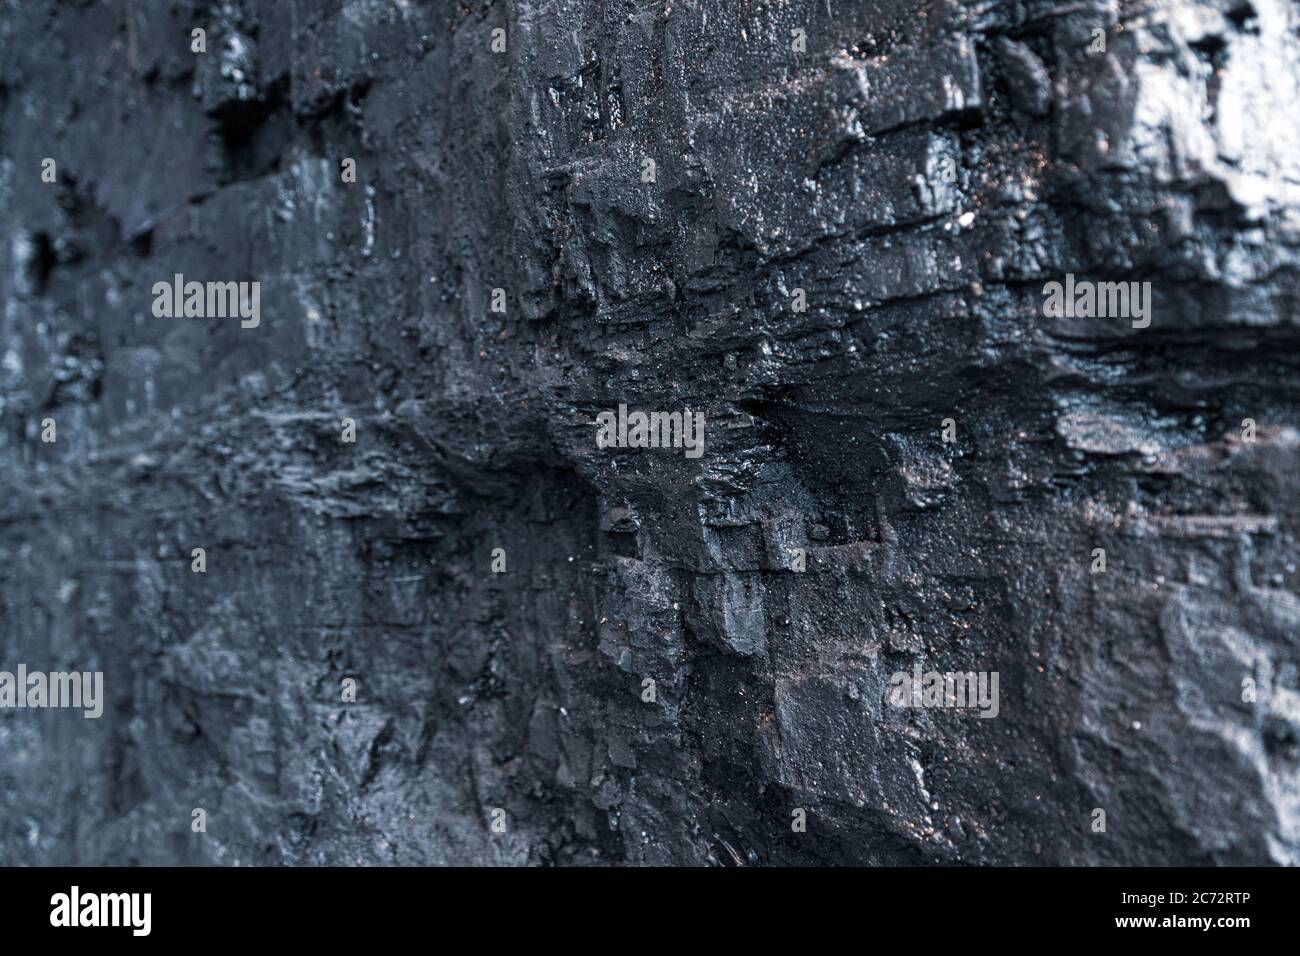 Bord chatoyant d'un gros morceau de charbon noir. Photo libre de droits. Banque D'Images